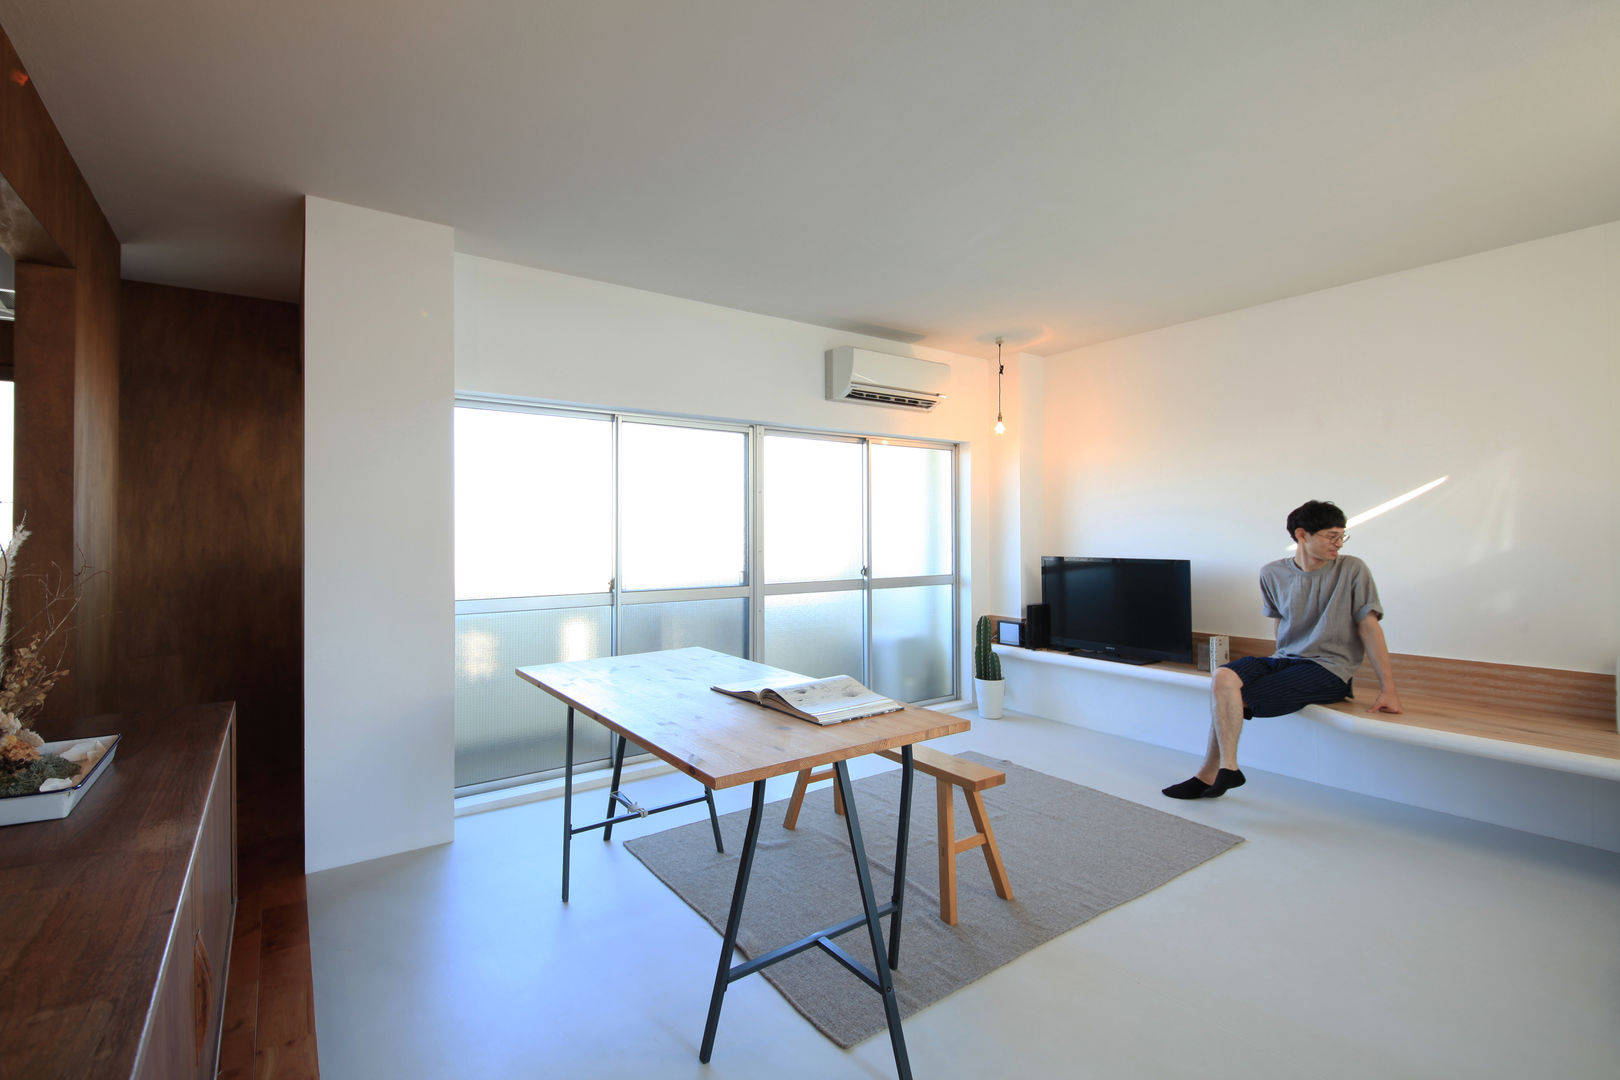 Nのリノベーション, の ざ き 設 計 の ざ き 設 計 Minimalist living room